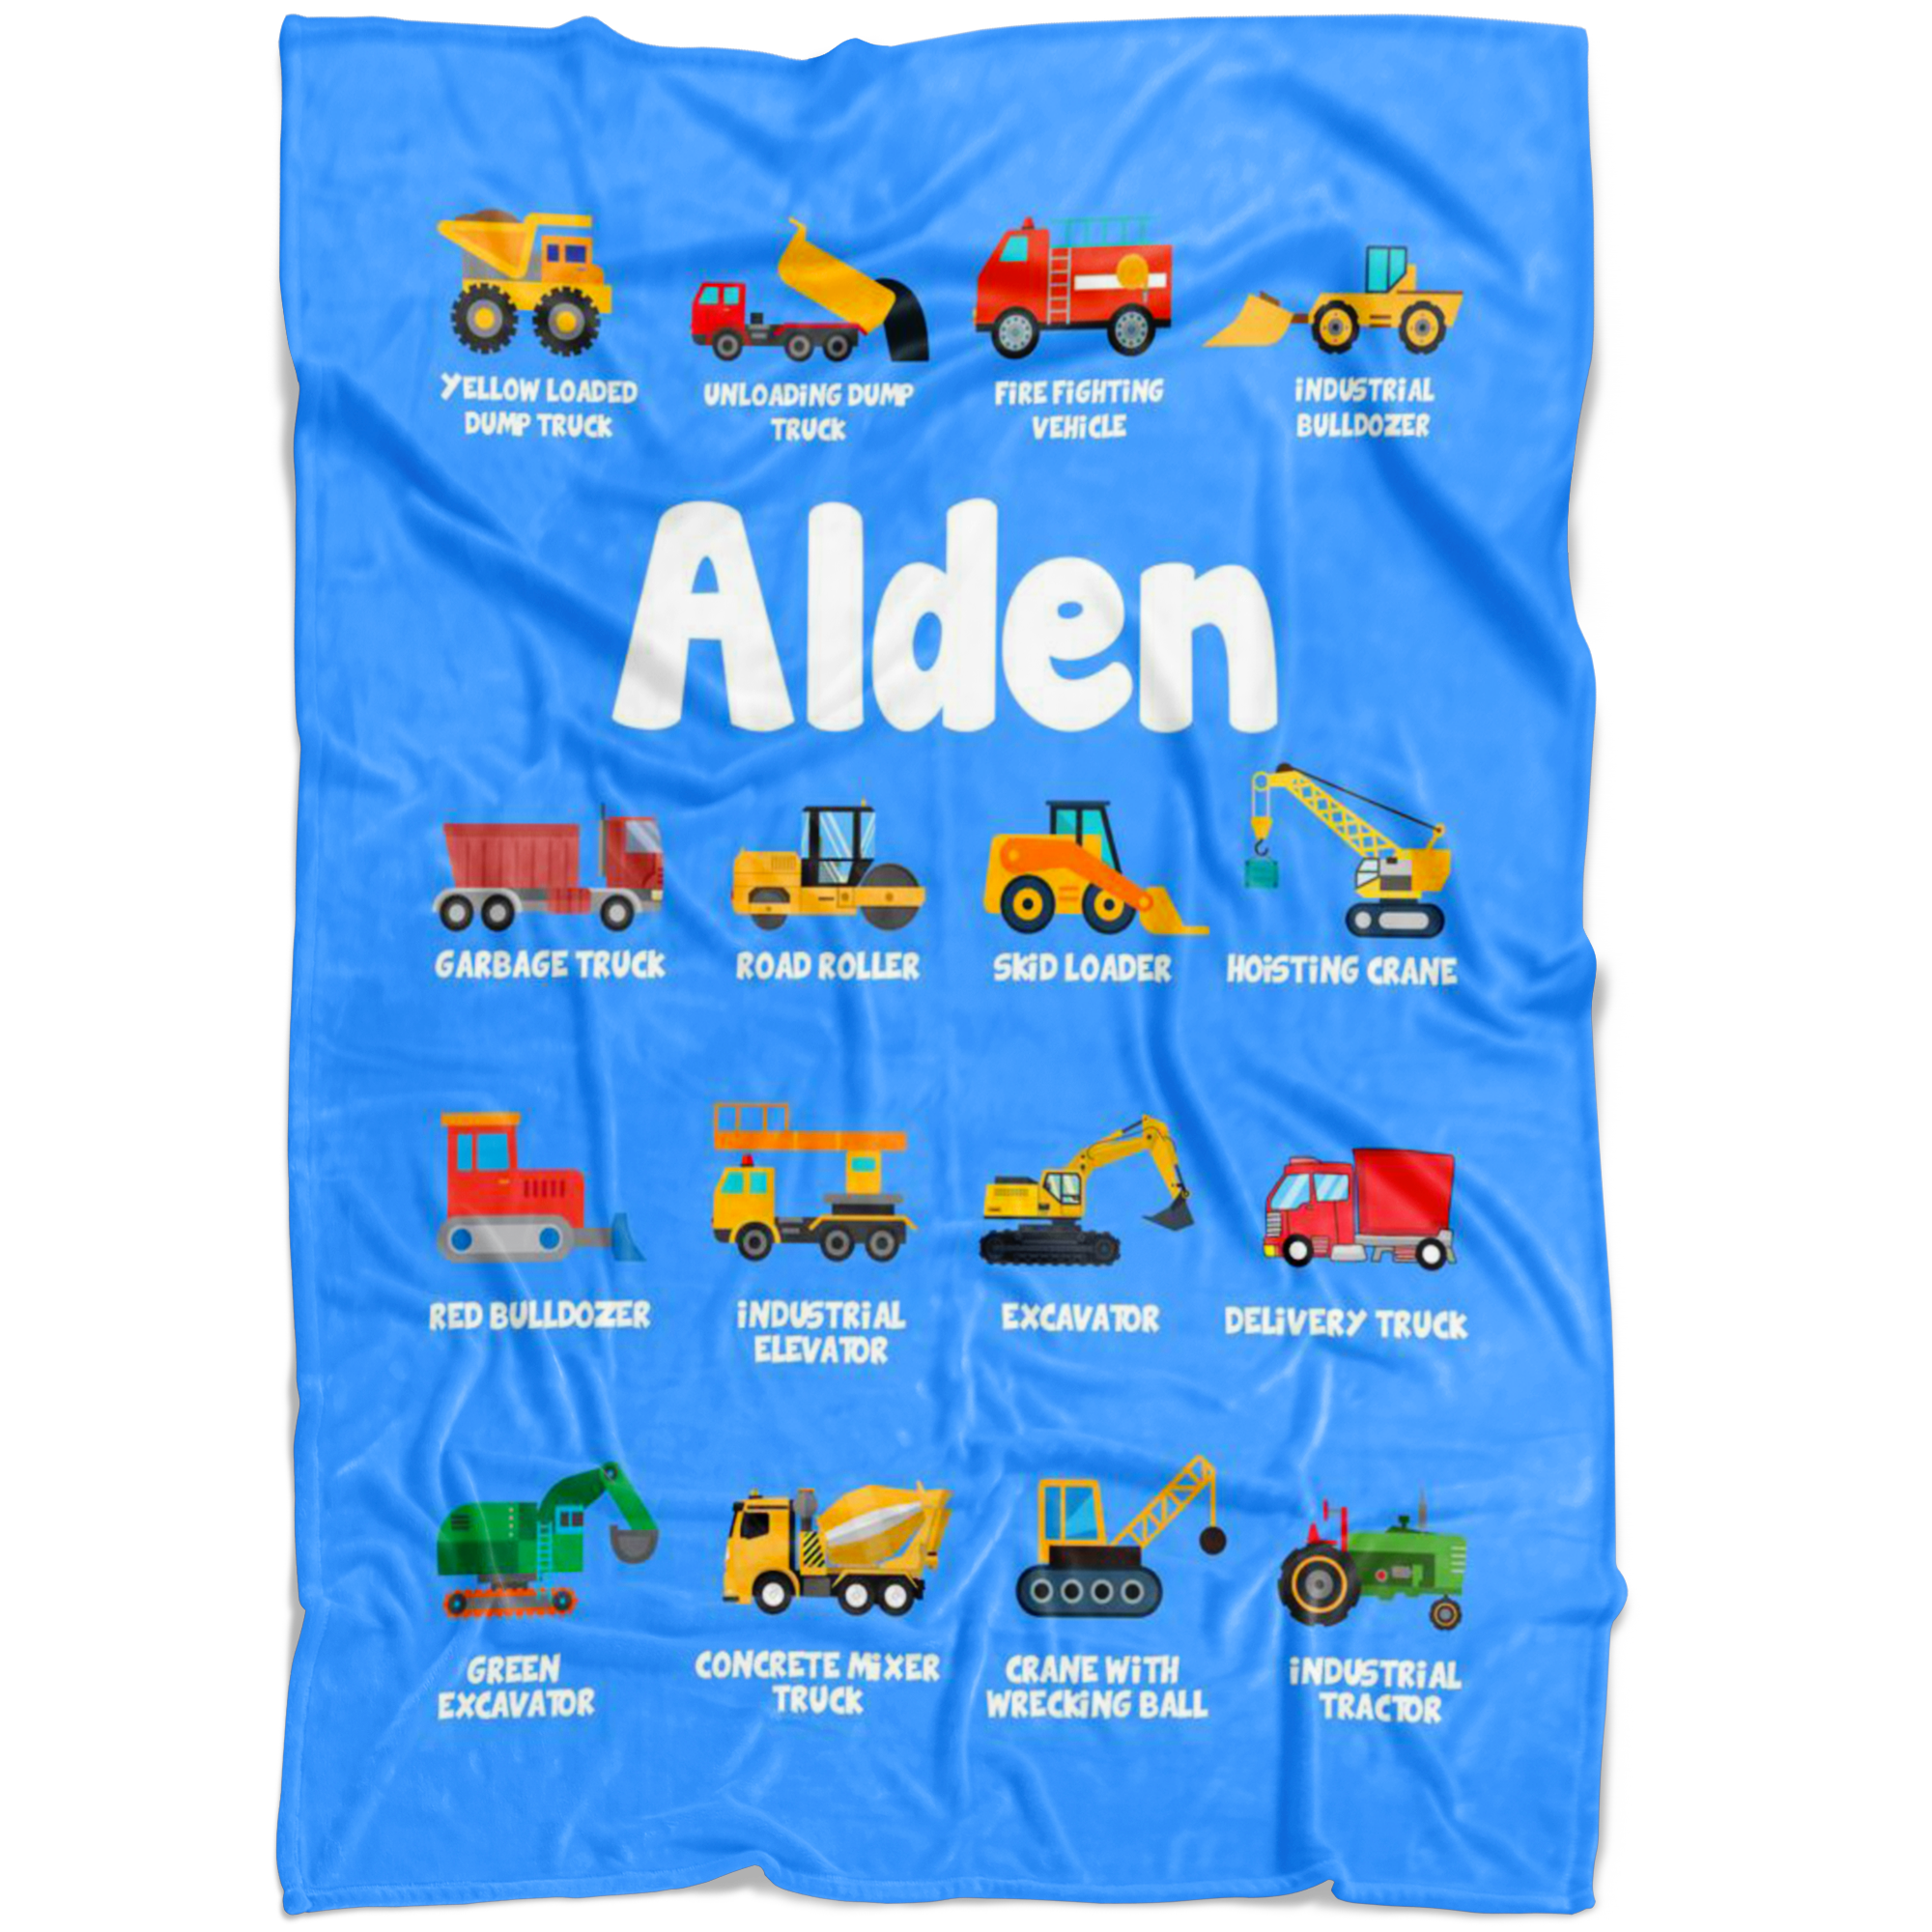 Alden Construction Blanket Blue